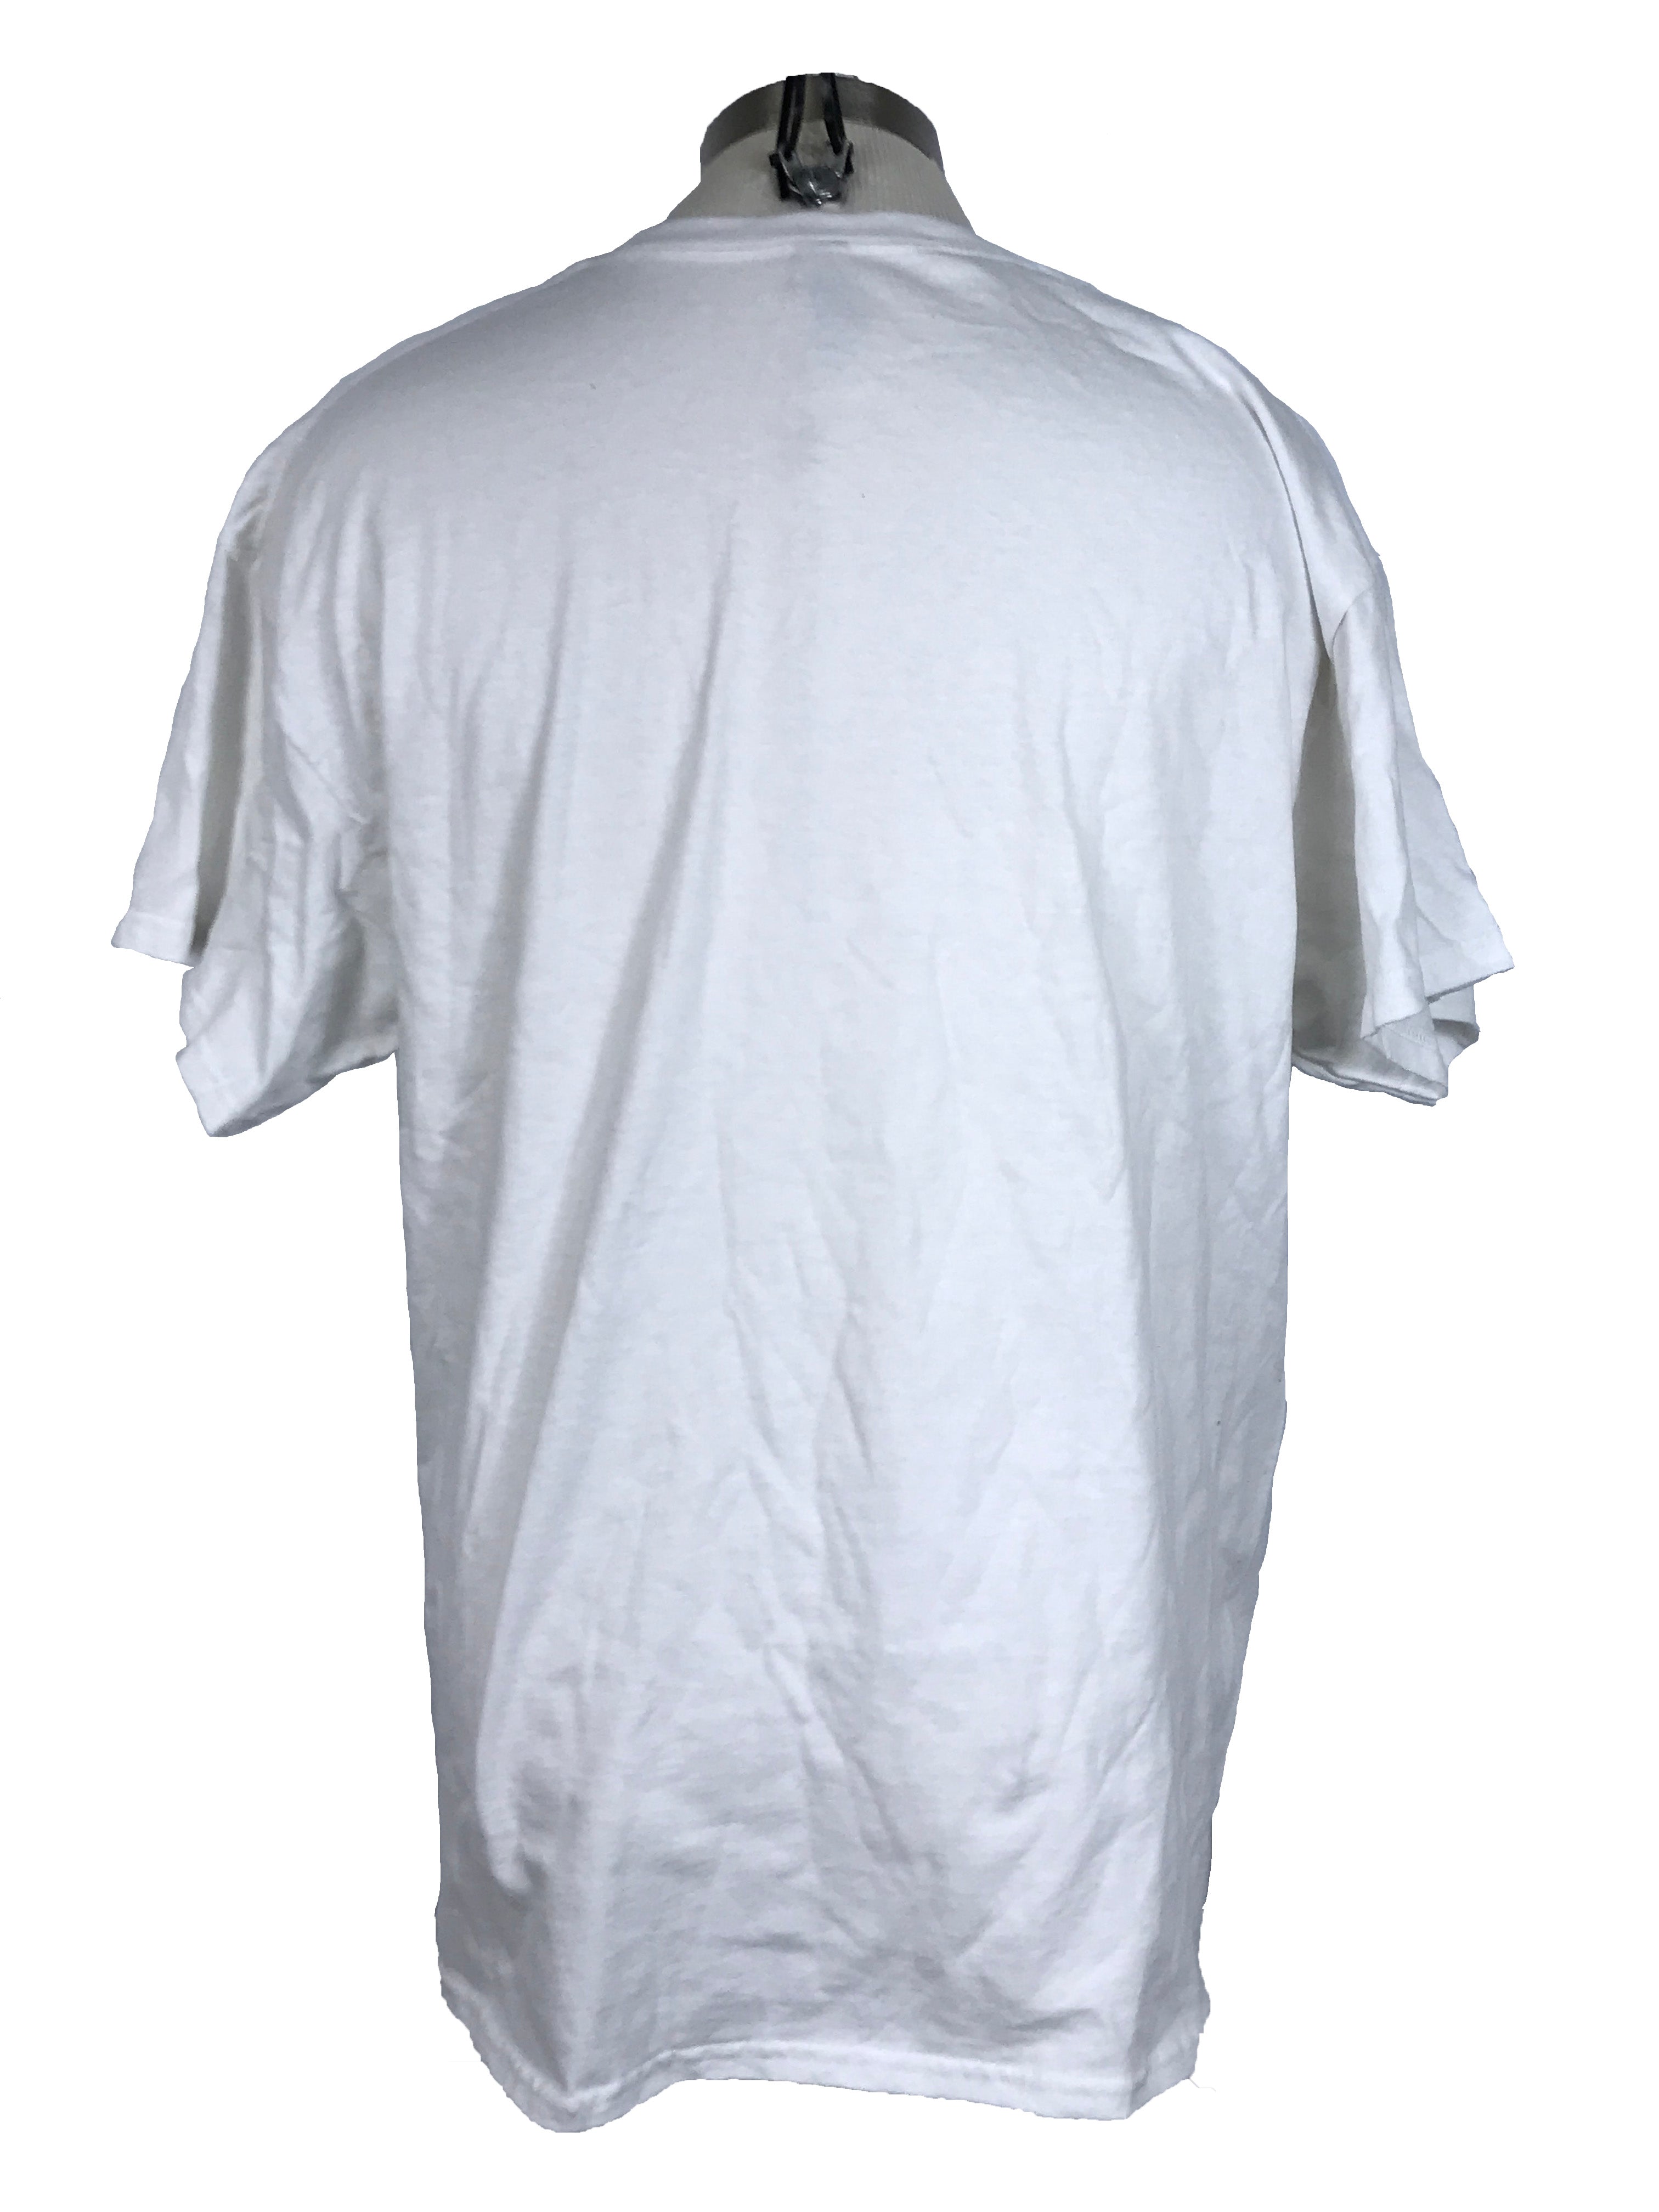 White MSU "Spartans Will" T-Shirt Unisex Size 3XL